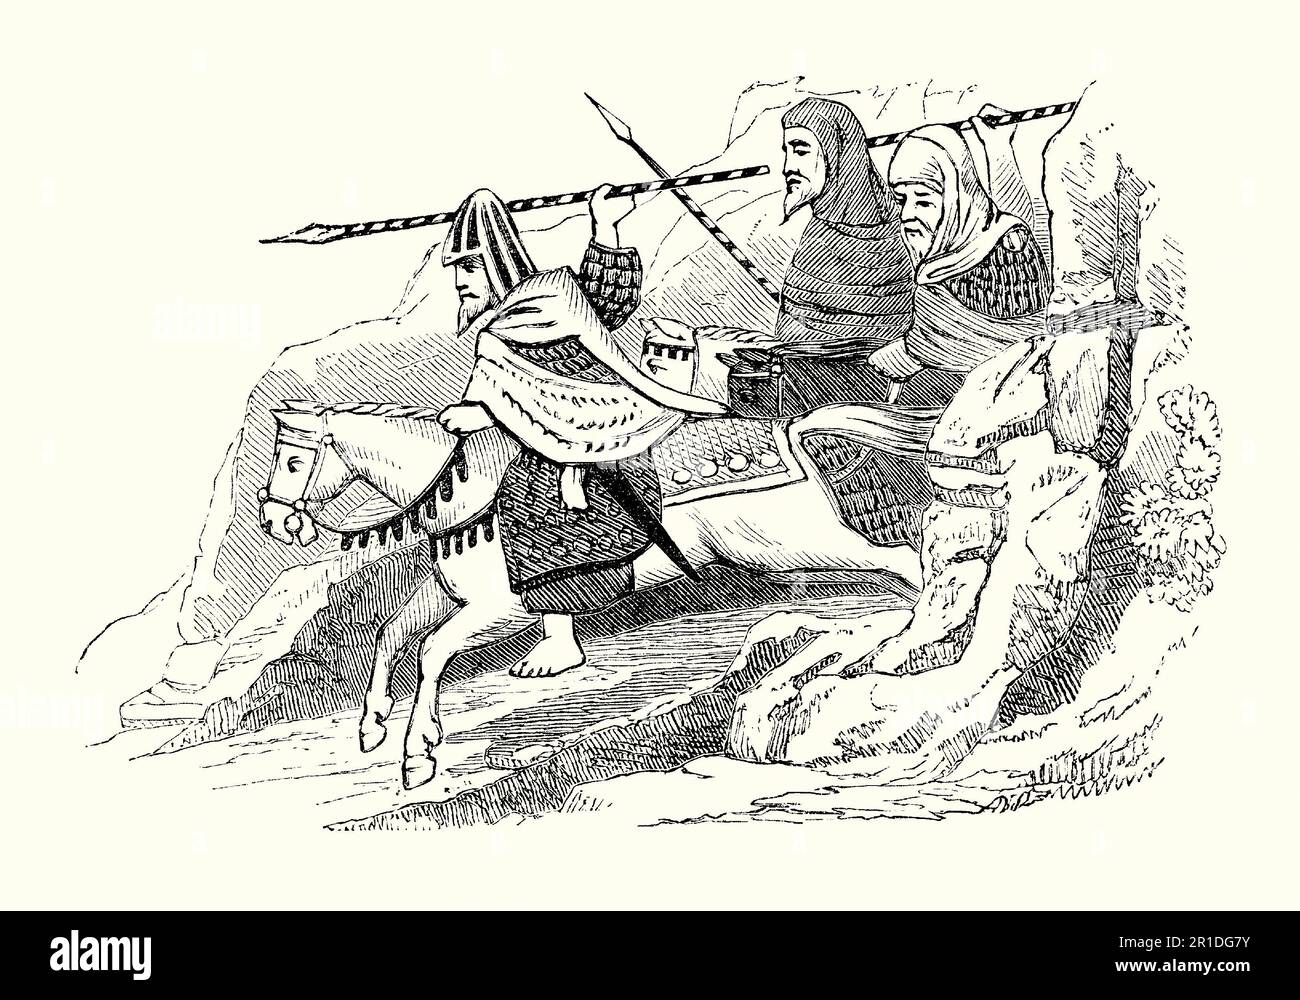 Eine alte Gravur irischer Reiter, die ihre Lanzen schwingen. 1600. Diese Kavallerie-Soldaten (oder Gallowbrillen) trugen robuste, gesteppte Umhänge oder Jacken und trugen manchmal Weidenschilde. Sie sind ohne Steigbügel auf ihren Pferden geritten. Stockfoto